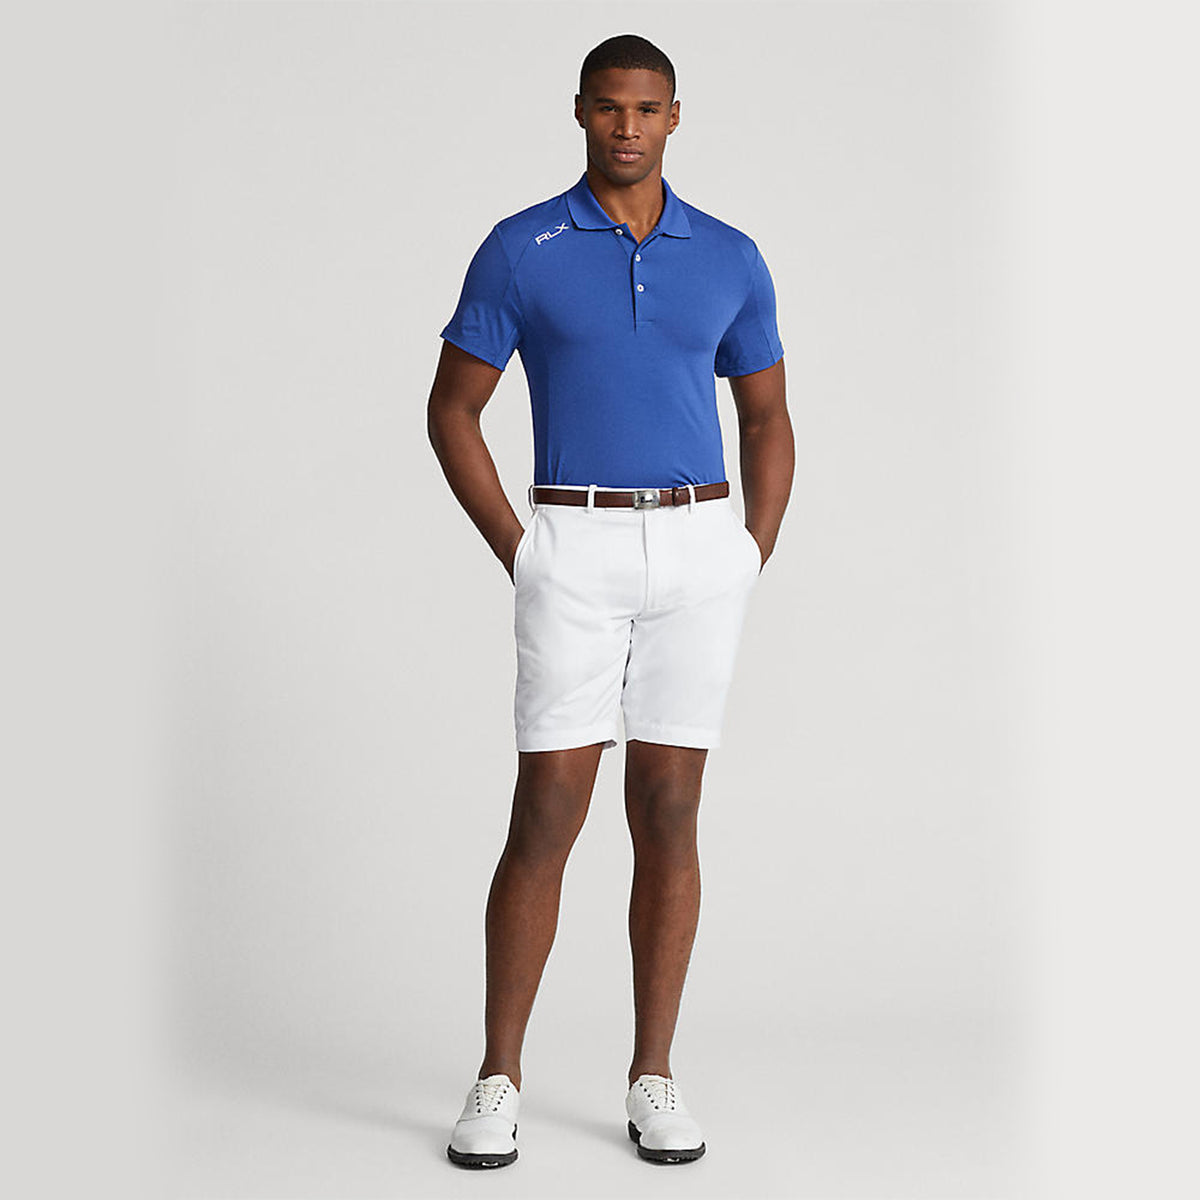 RLX Ralph Lauren Stretch Jersey Golf Polo Shirt - Royal Navy